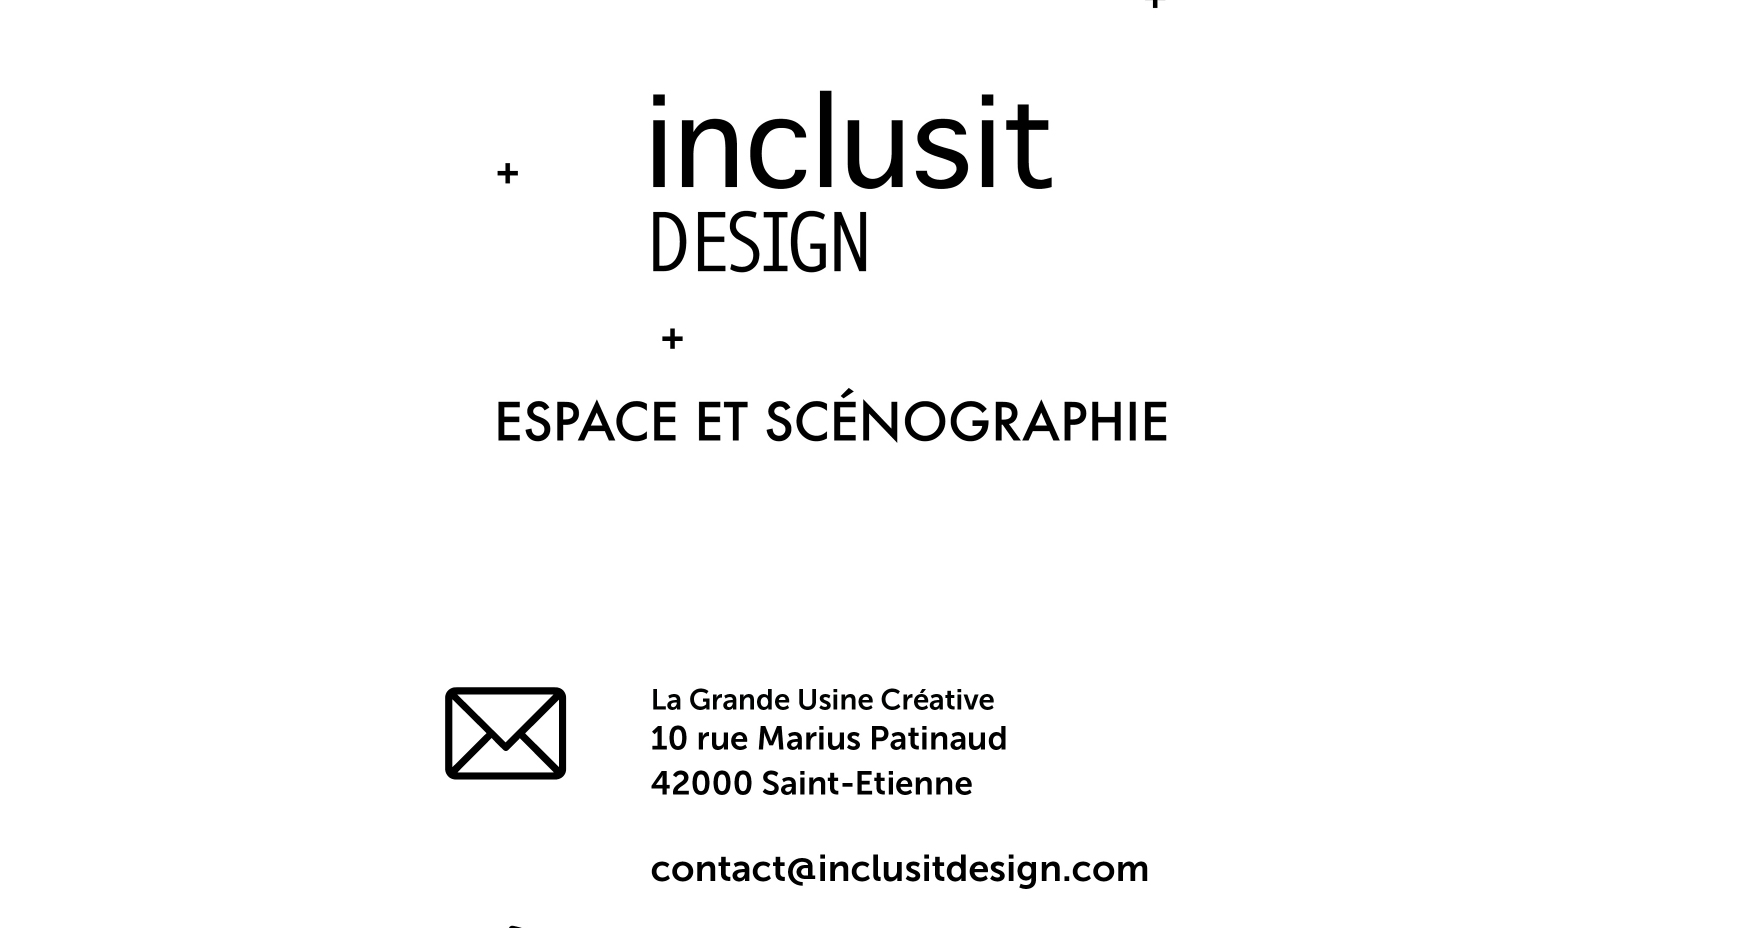 CONTACT-inclusit-design_Contact-Inclusit design